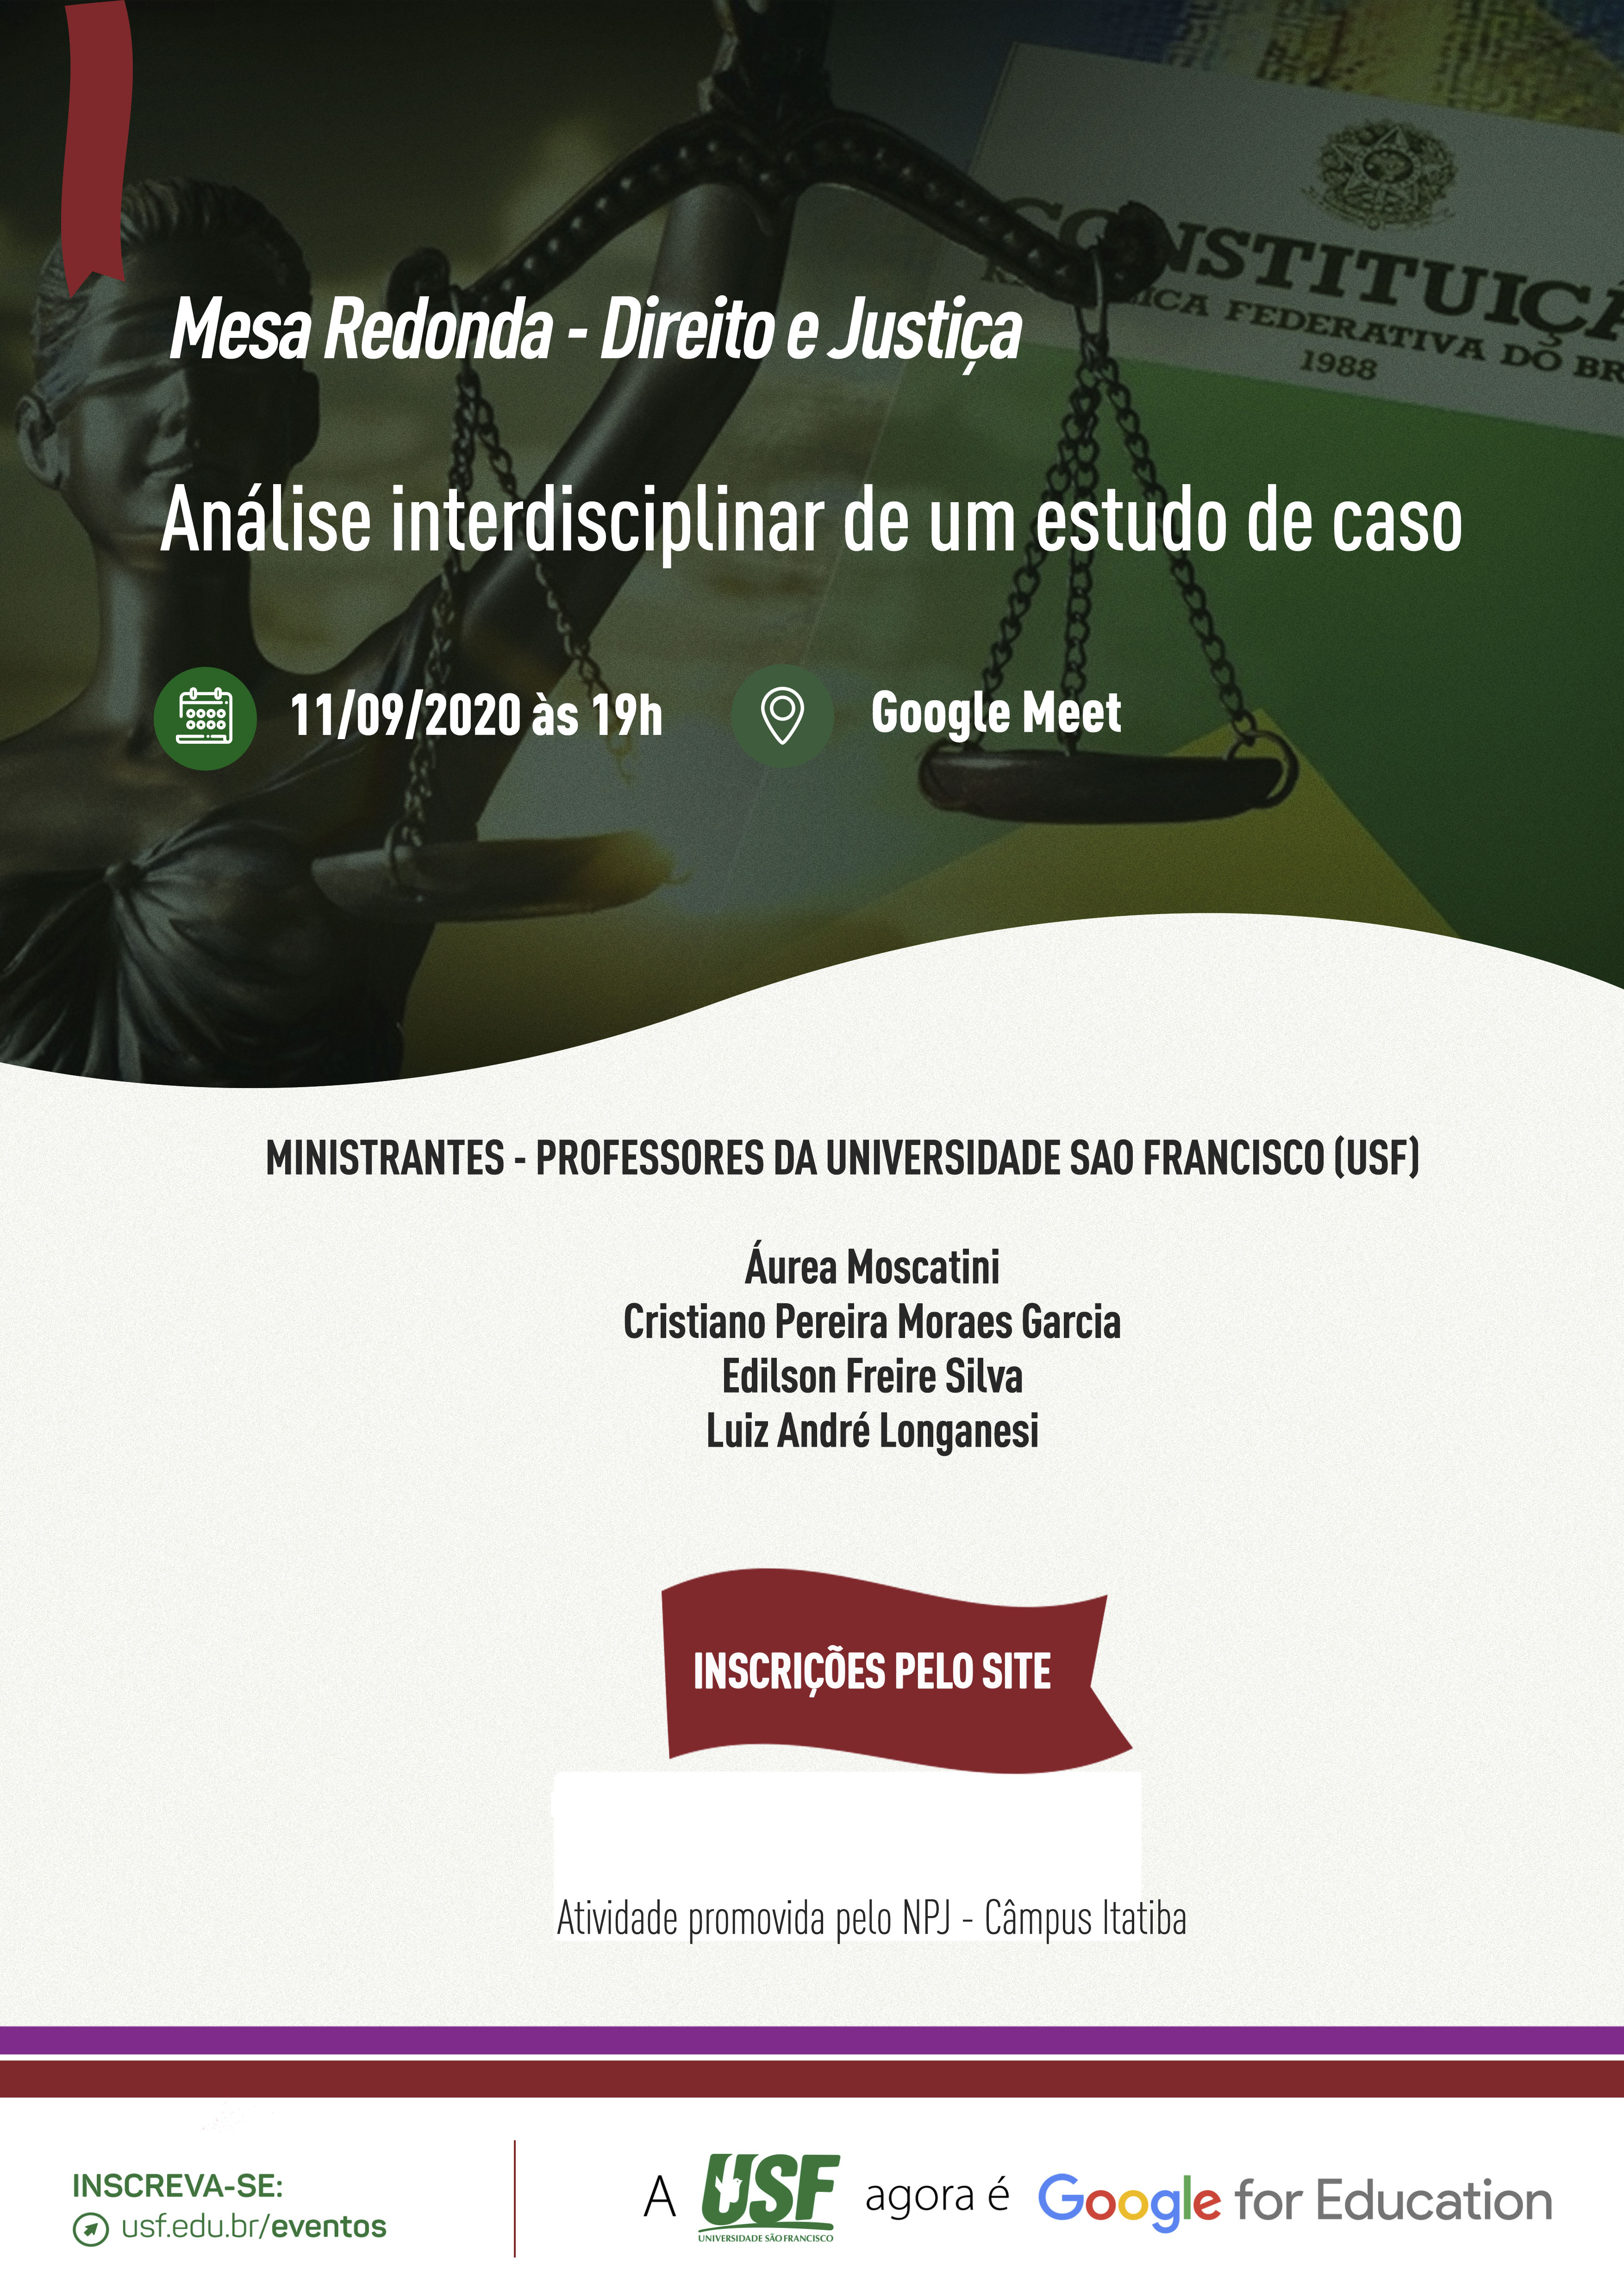 Direito e Justiça: análise interdisciplinar de um estudo de caso